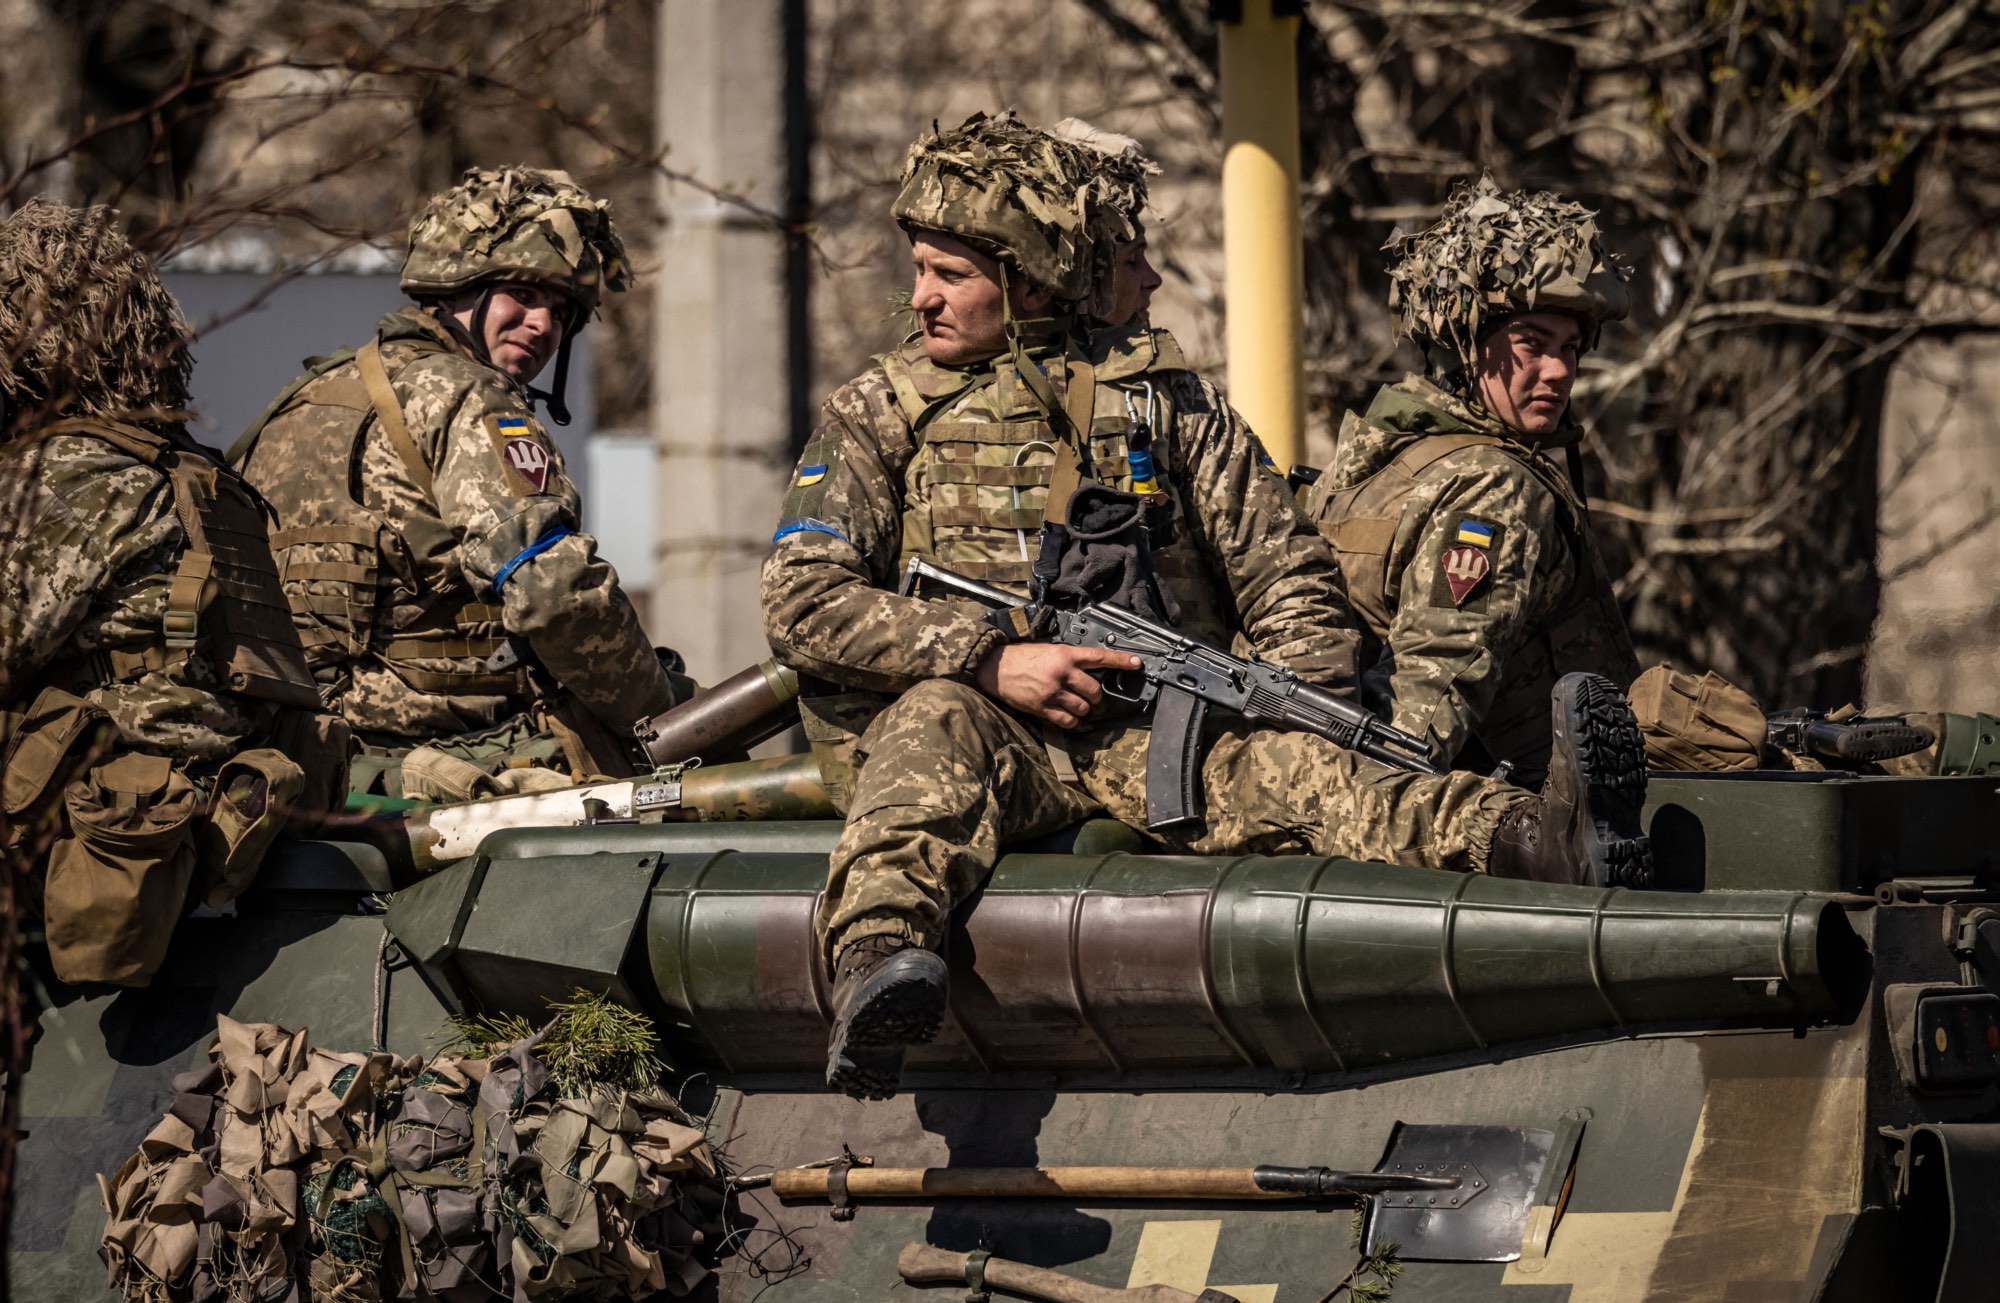 getty-ukraine-soldiers.jpg